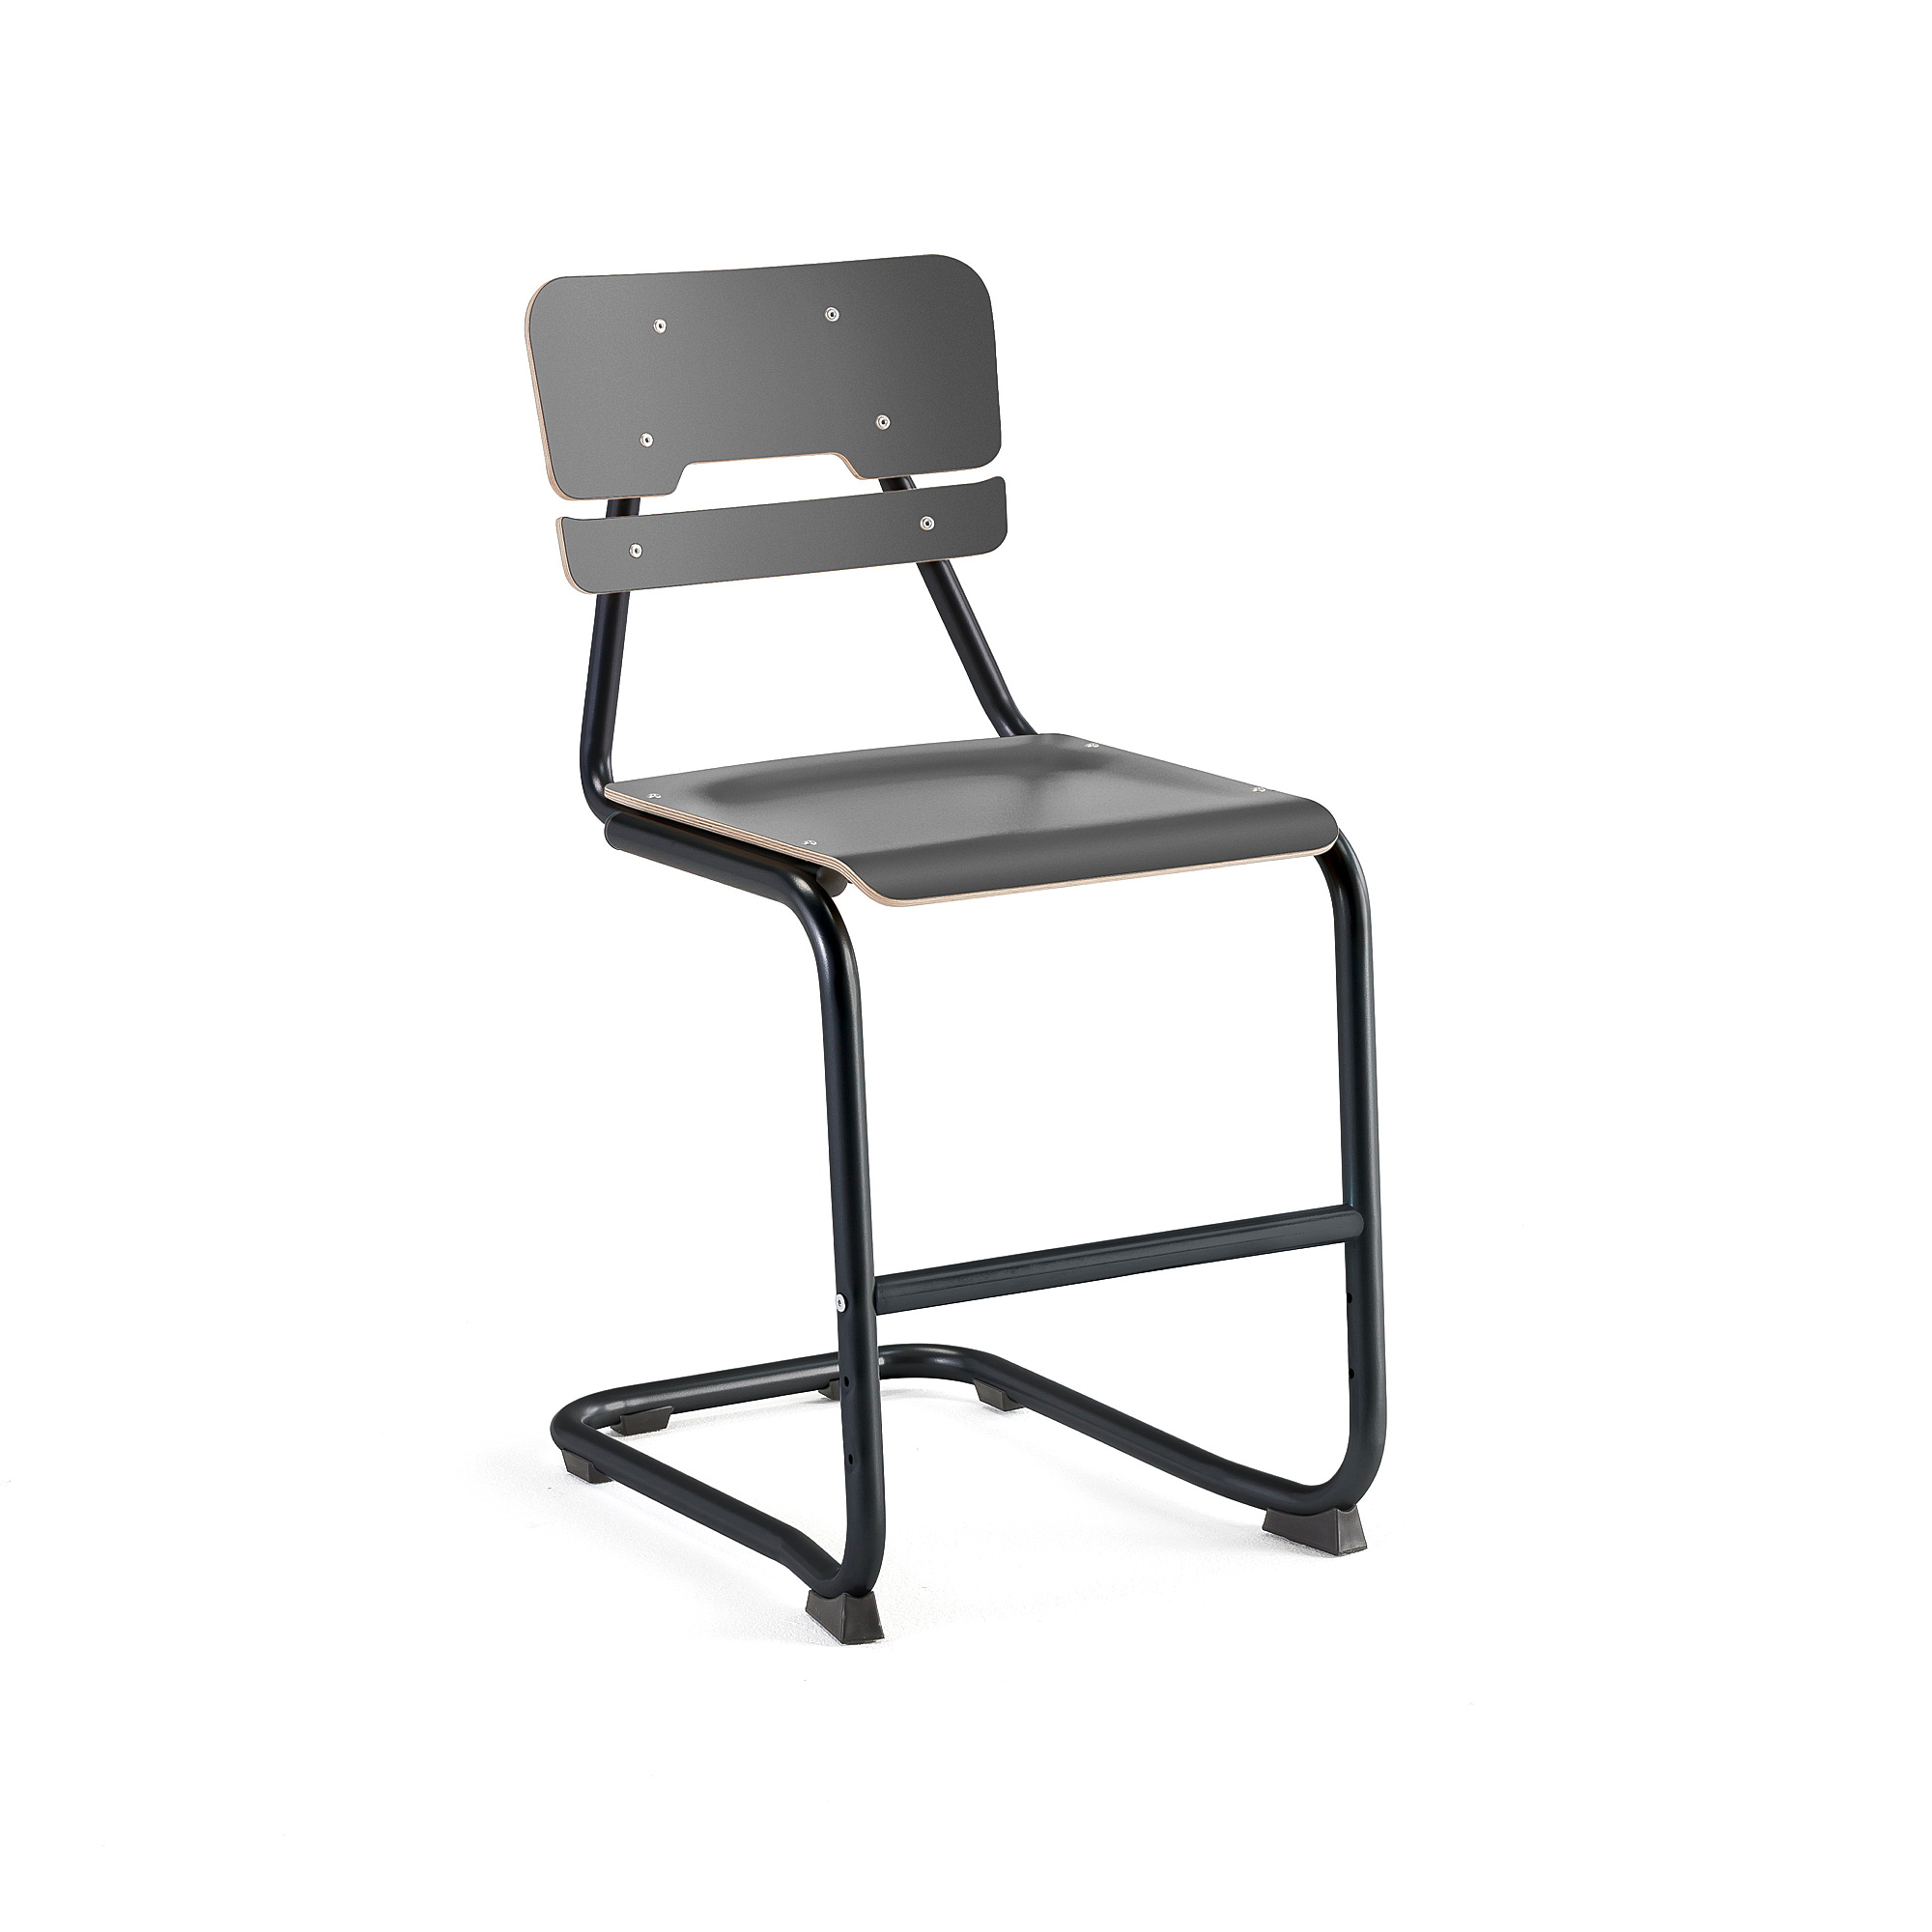 Školní židle LEGERE I, výška 500 mm, antracitově šedá, antracitově šedá